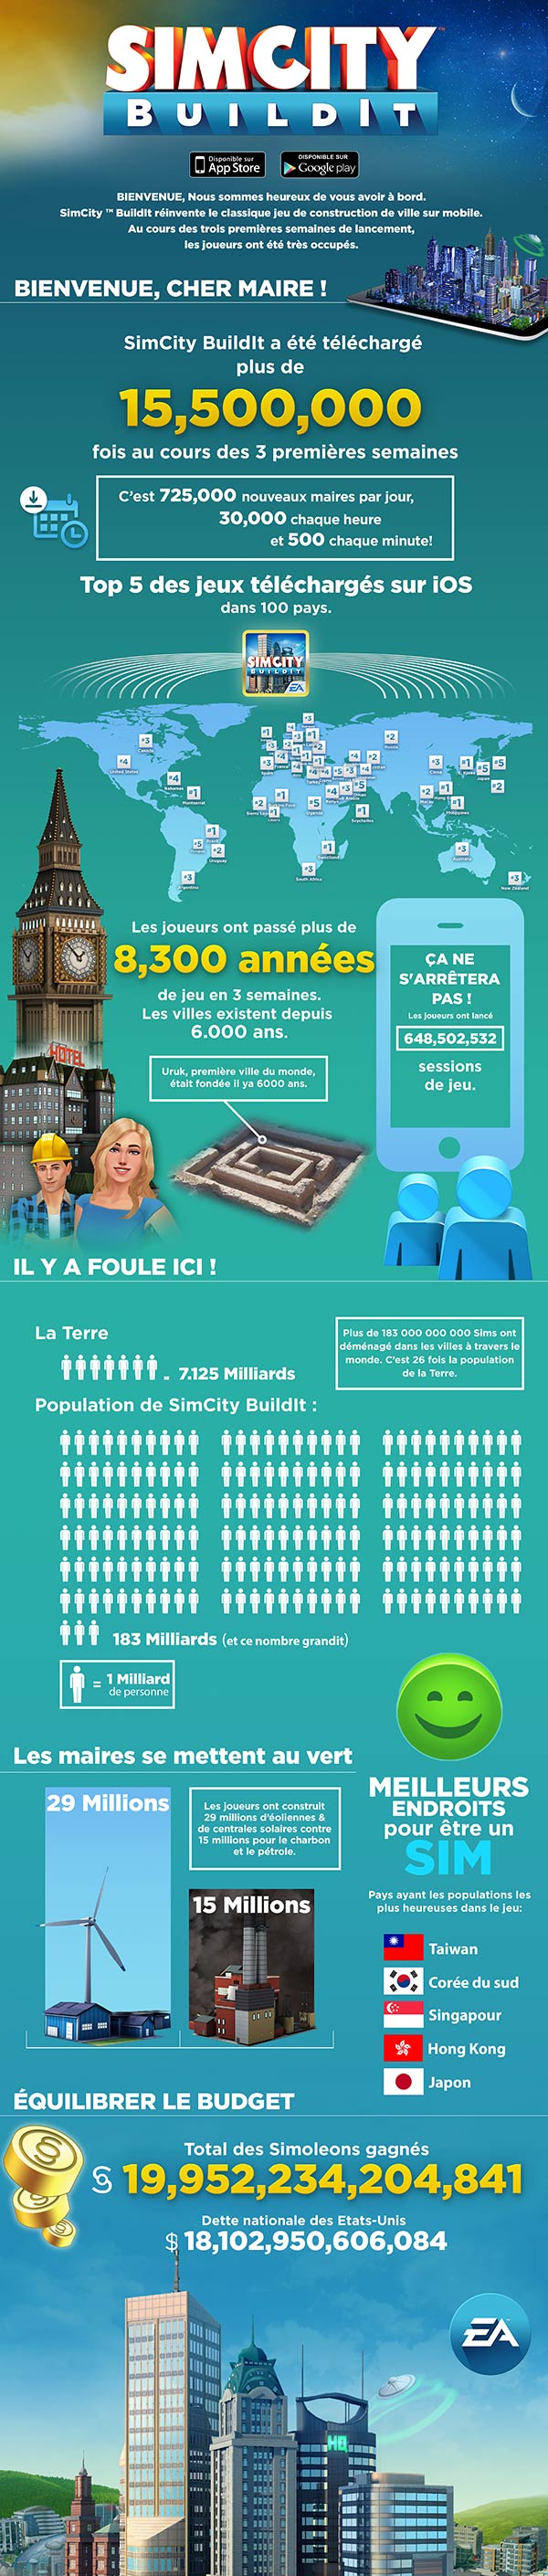 SimCity Buildlt téléchargé plus de 15 500 0000 fois (infographie)